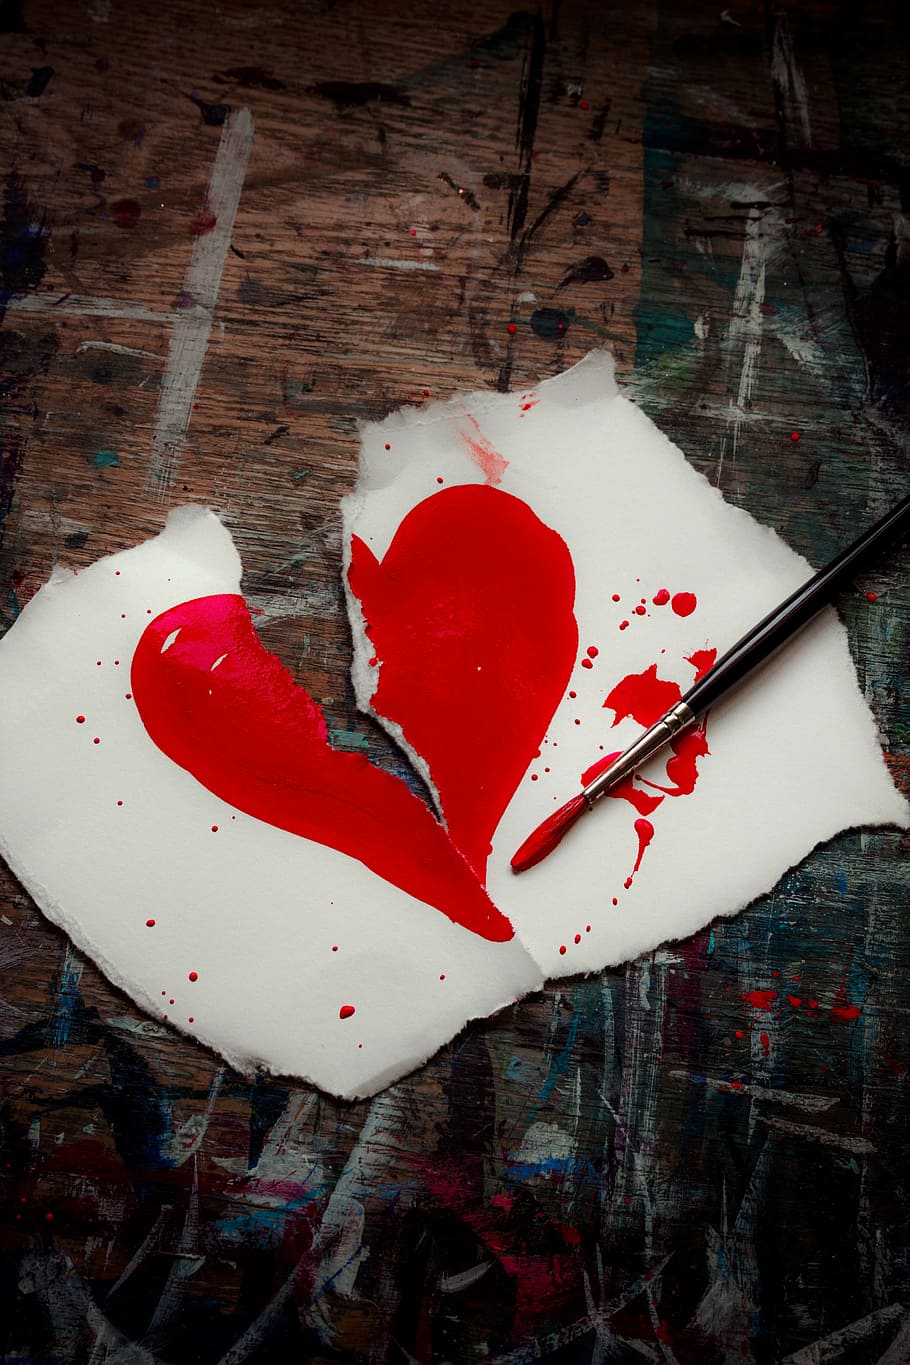 gambar hati yang terkoyak, hati yang hancur, merah, hati, cinta, patah, valentine, simbol, sedih, sakit